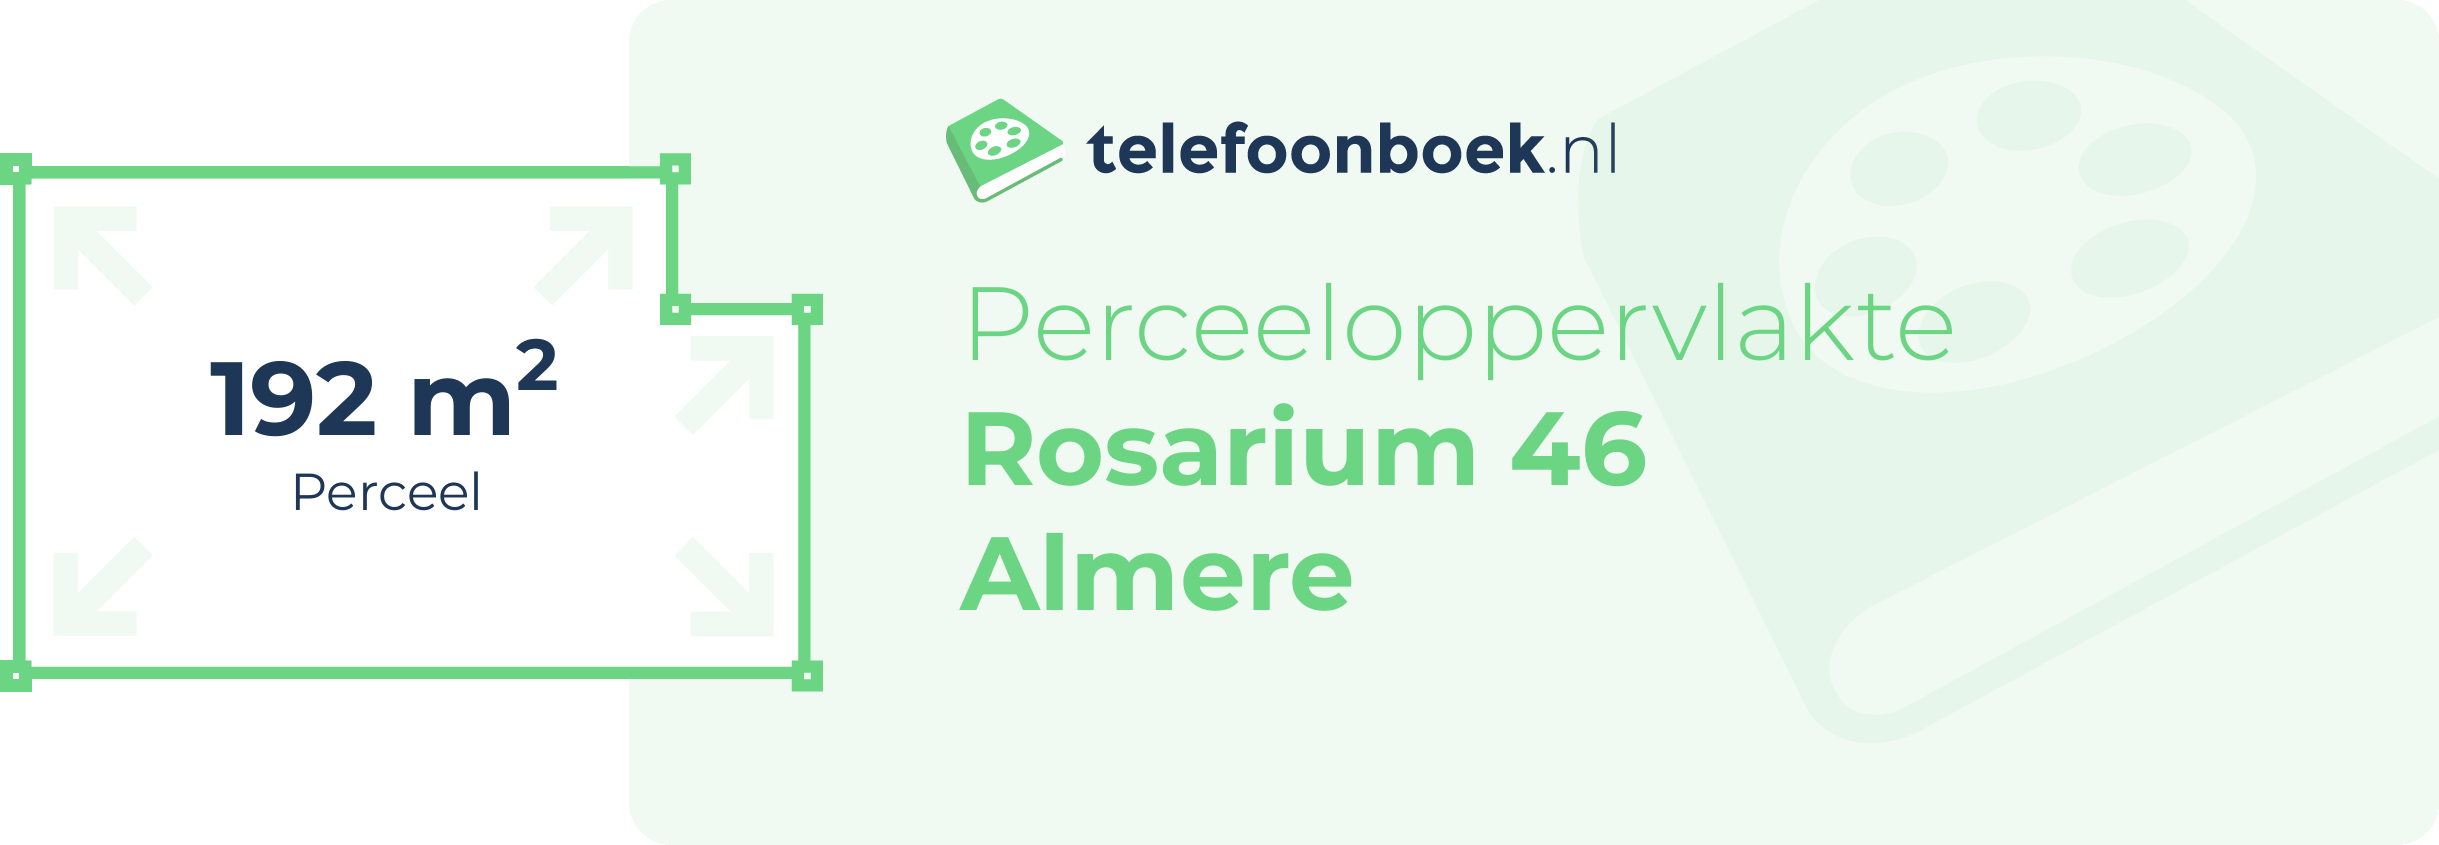 Perceeloppervlakte Rosarium 46 Almere